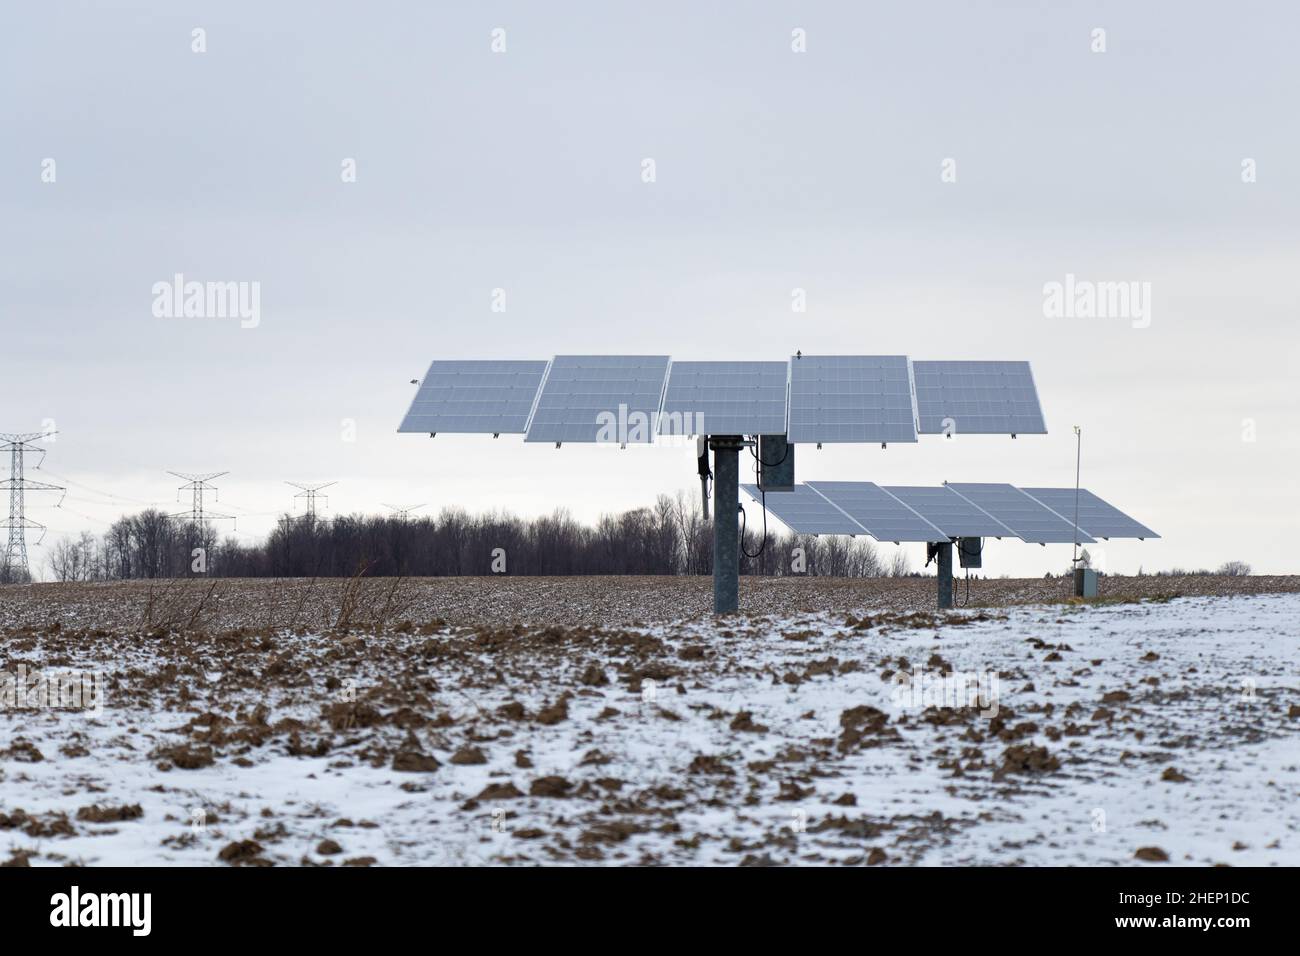 Une paire de trackers solaires, qui orientent les panneaux solaires vers le soleil, est vue dans une zone rurale un après-midi enneigé. Banque D'Images